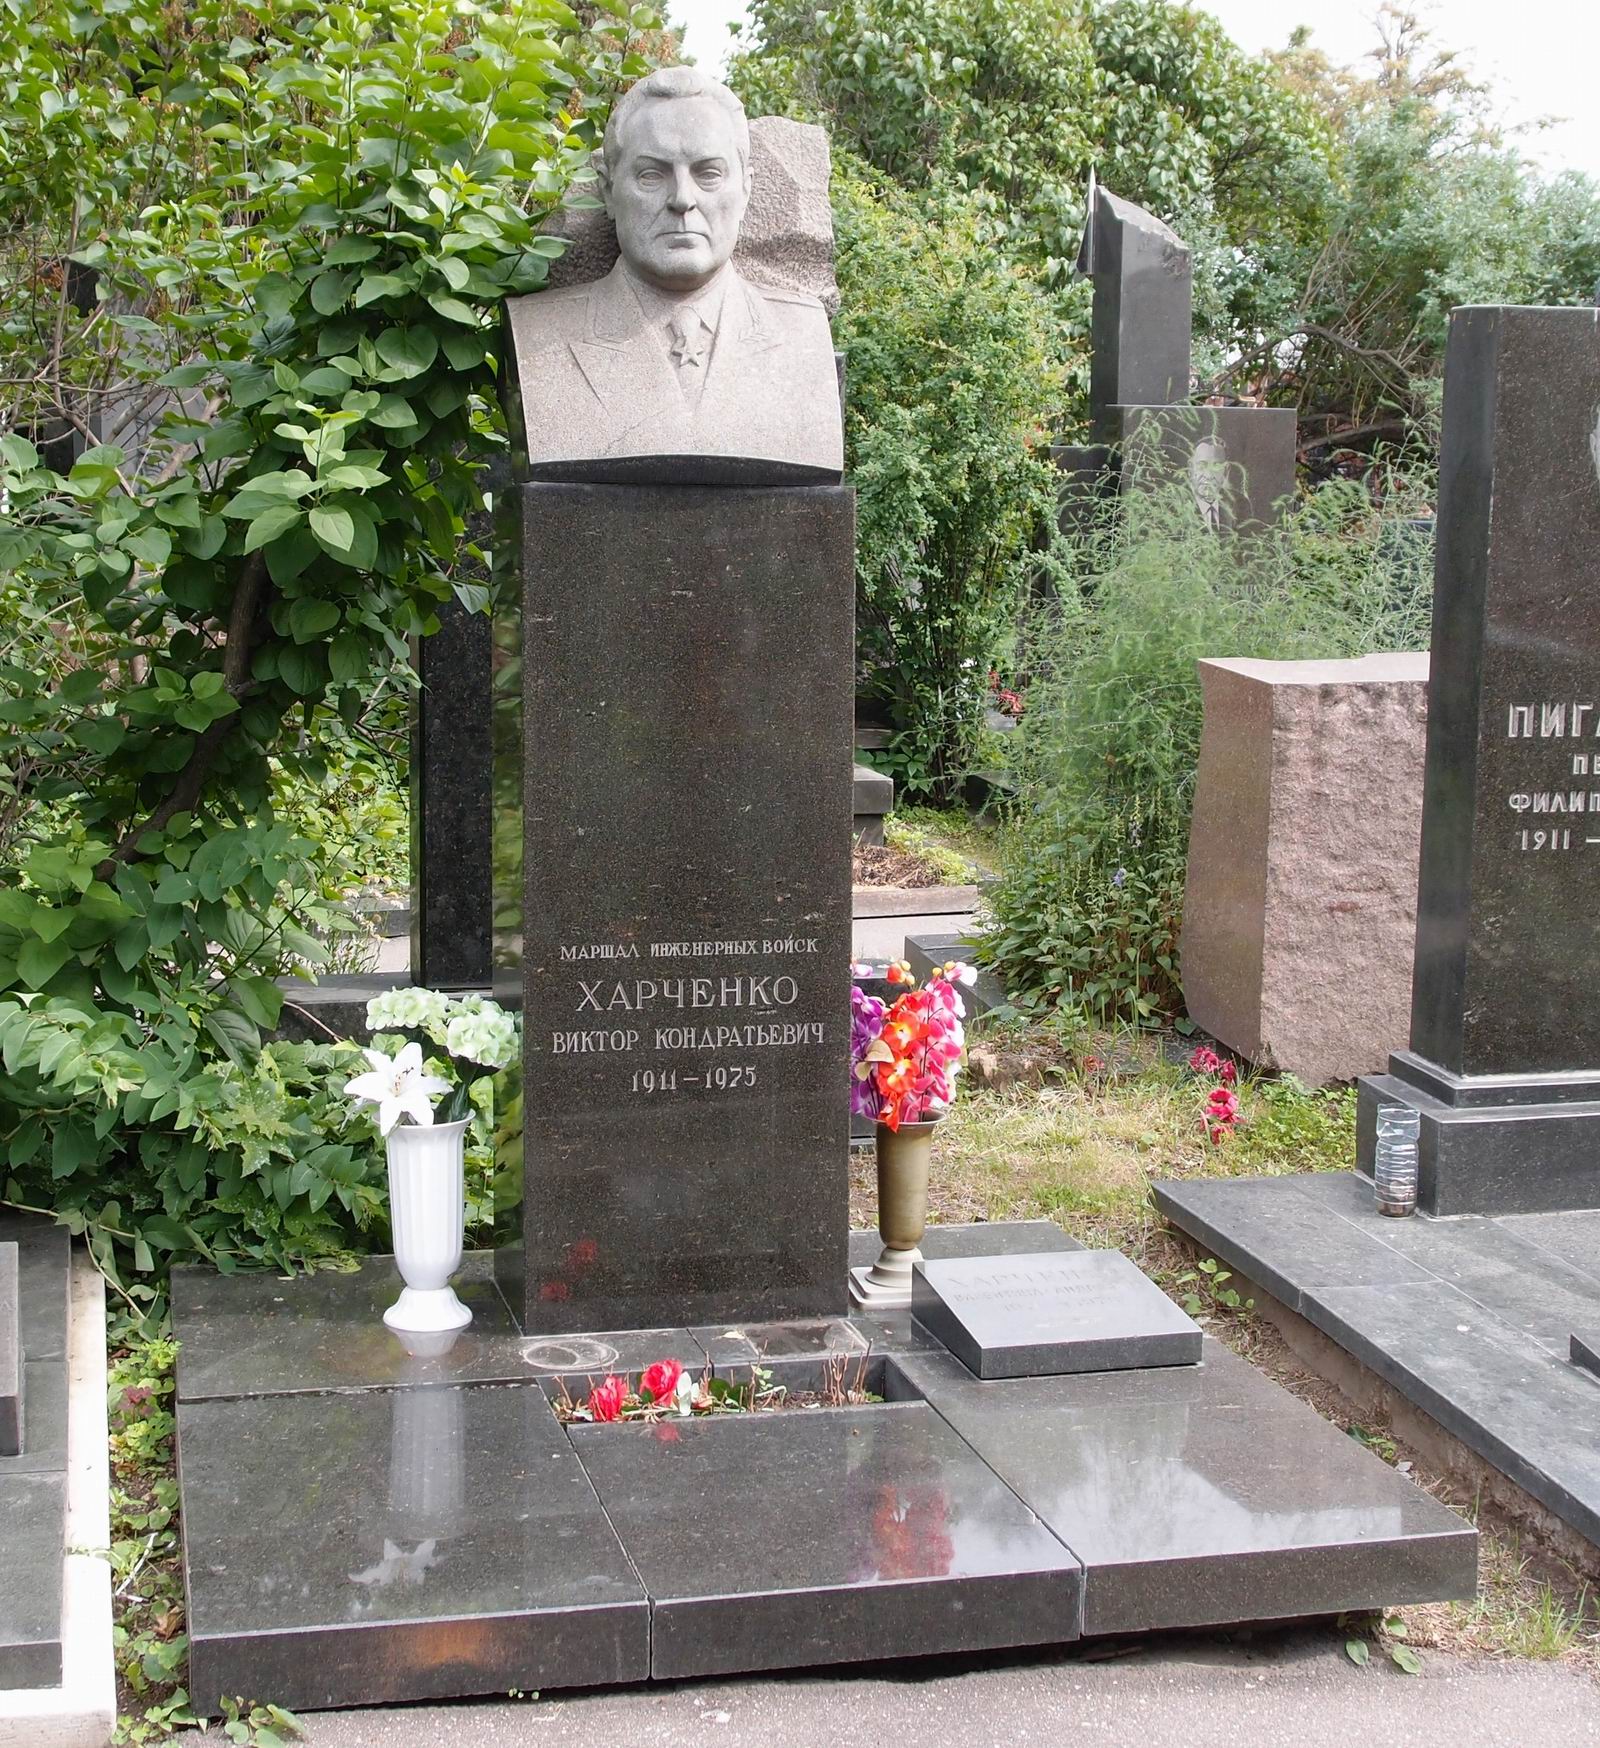 Памятник на могиле Харченко В.К. (1911-1975), ск. Ю.Иванов, арх. Б.Кушков, на Новодевичьем кладбище (7-10-21).